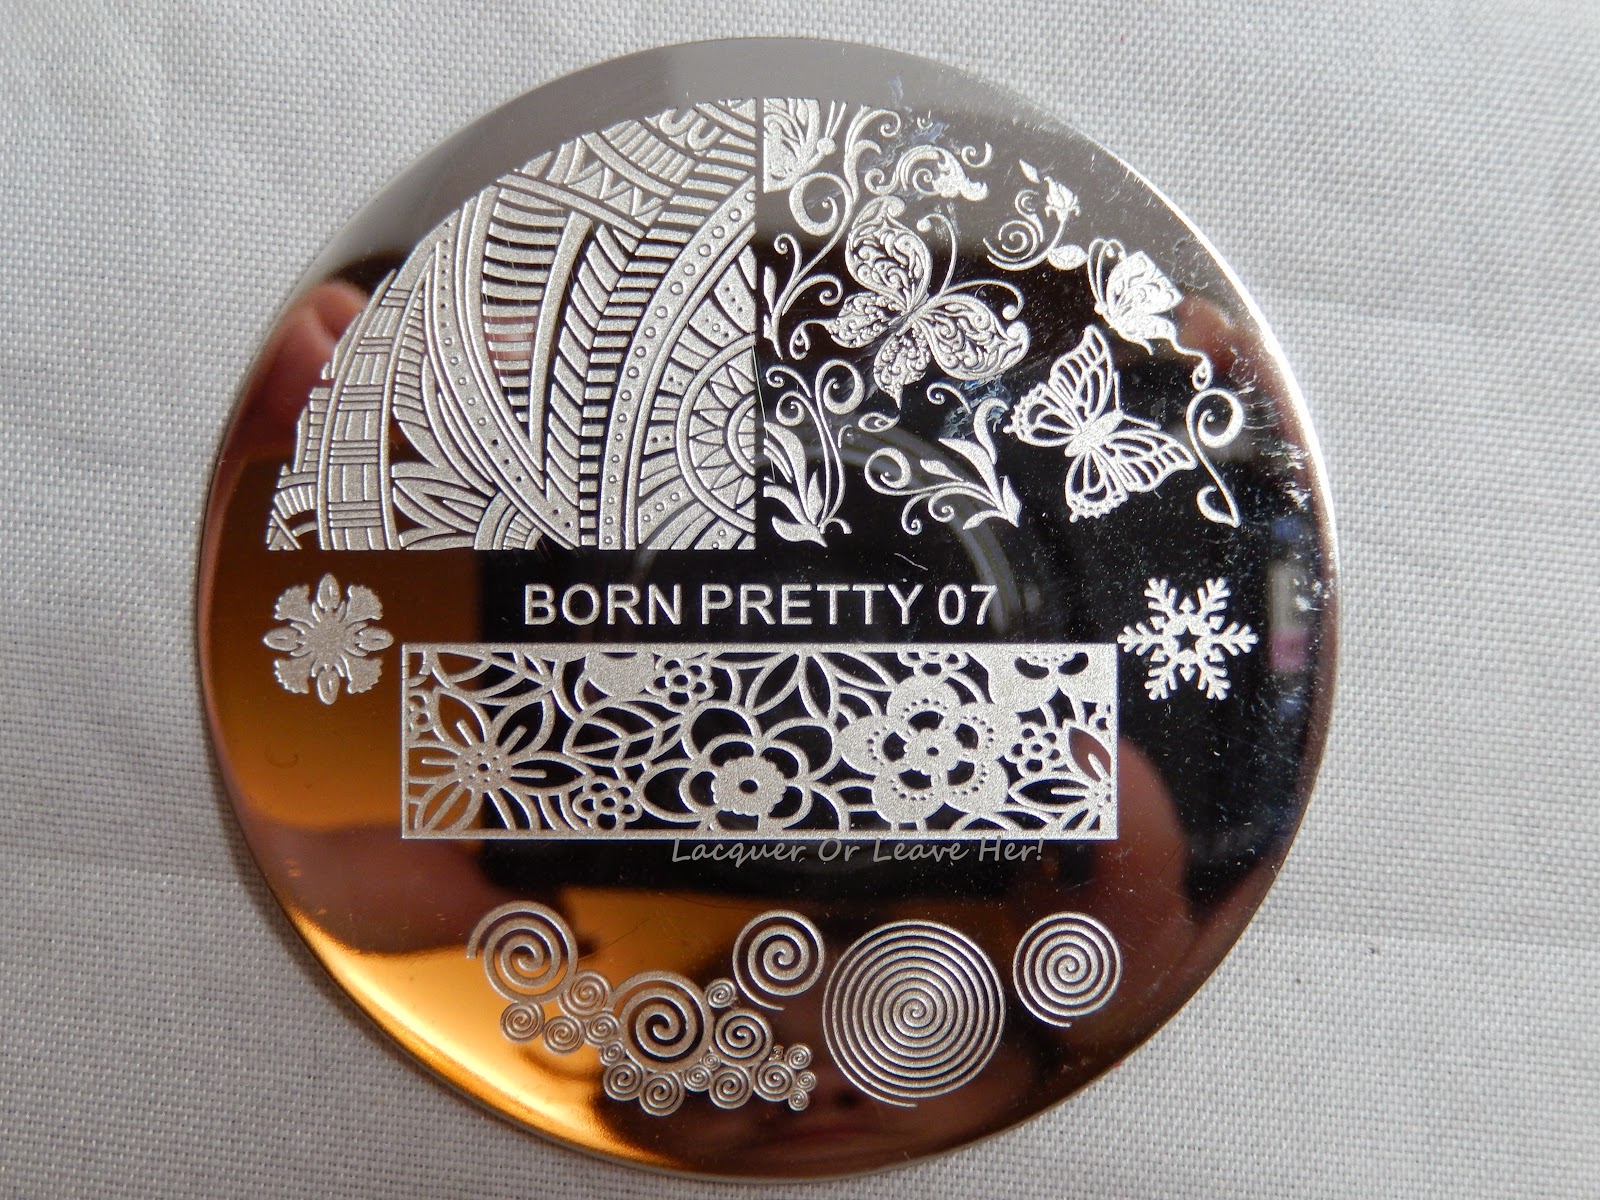 Born Pretty 07